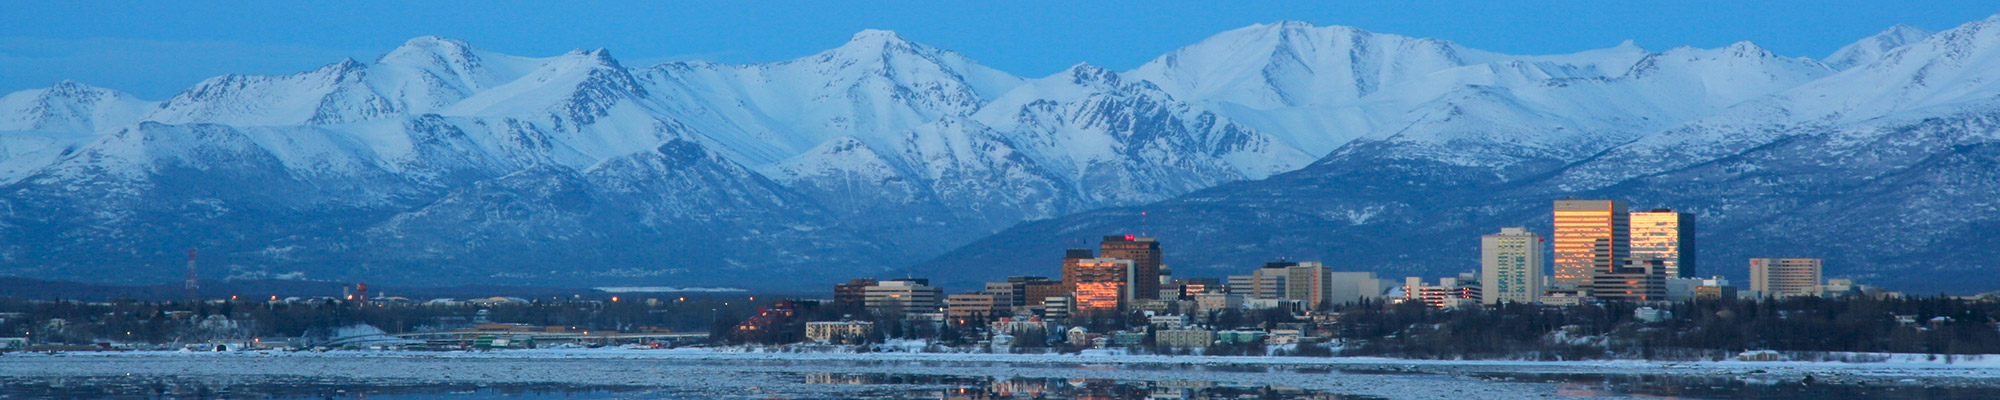 Alaska - City Skyline